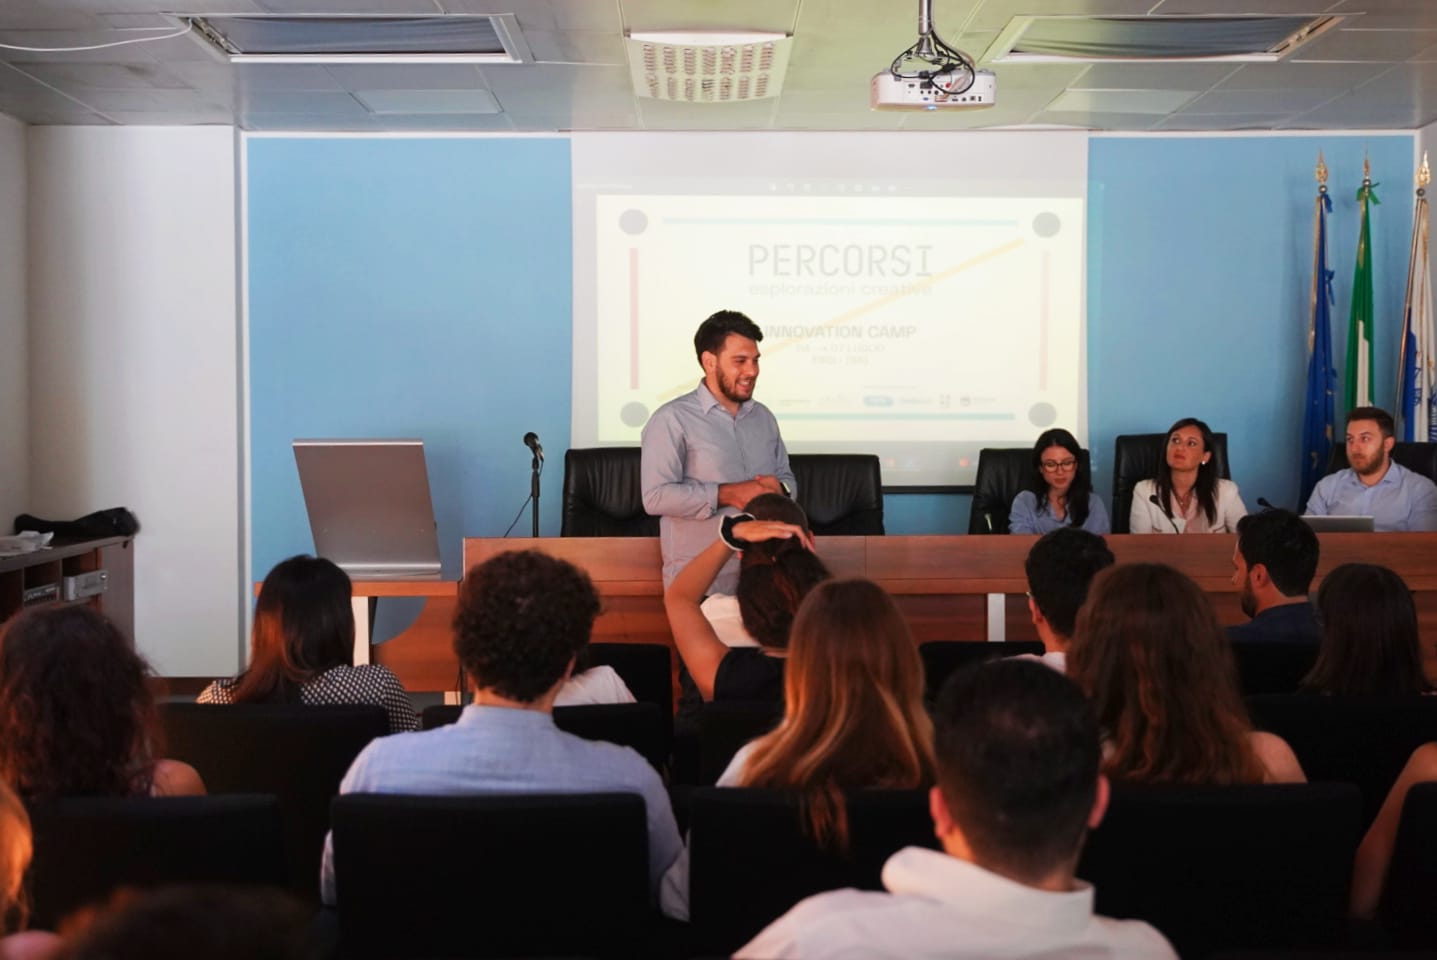 Salerno: Percorsi Innovation Camp, presentazione ufficiale a Camera di Commercio  